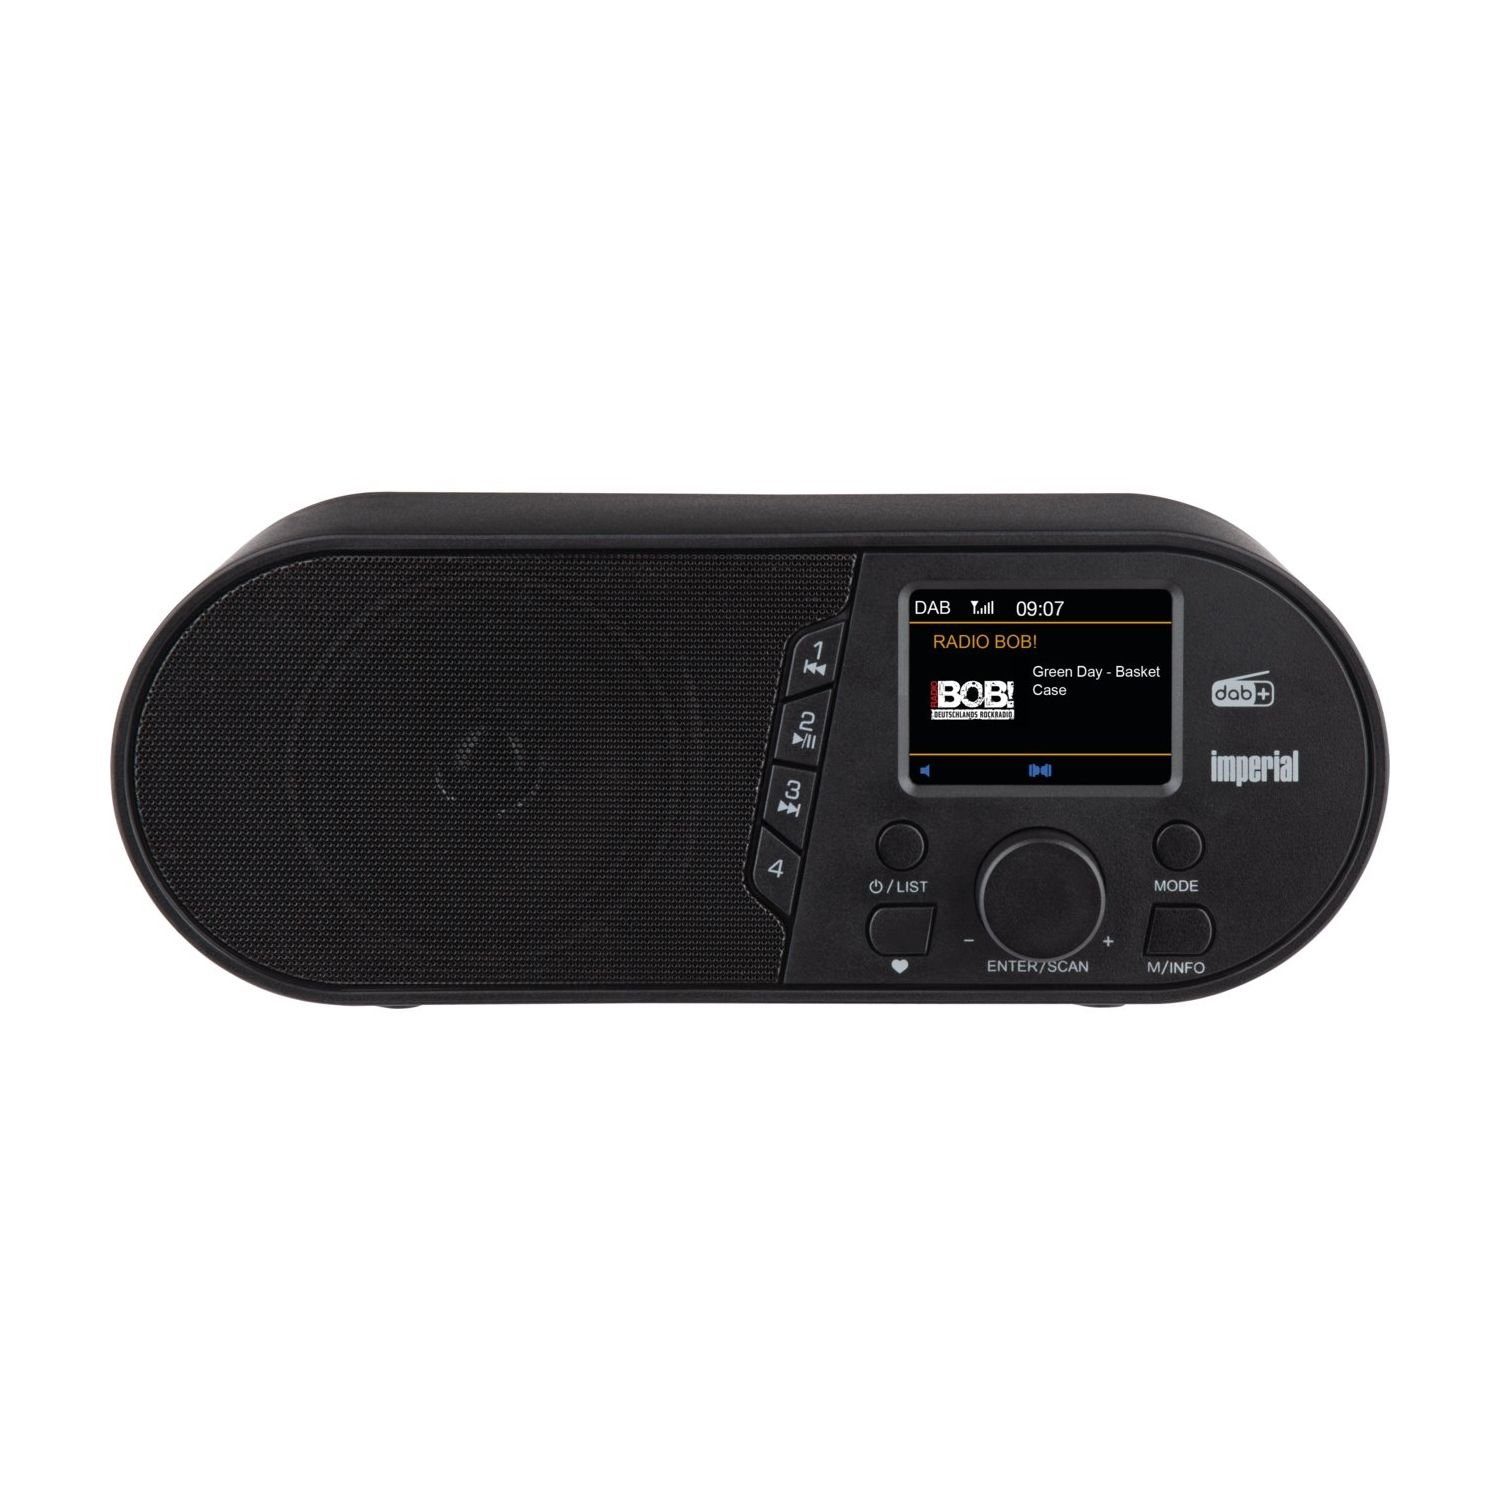 Audiodateien d105 von (DAB+/FM Digitalradio by mit USB-Mediaplayer, 4 Wiedergabe über Tasten Radio Radio, und 7 DABMAN (DAB) USB) Gerät, DAB+/UKW USB-Mediaplayer W, Direktwahl am TELESTAR Bluetooth IMPERIAL